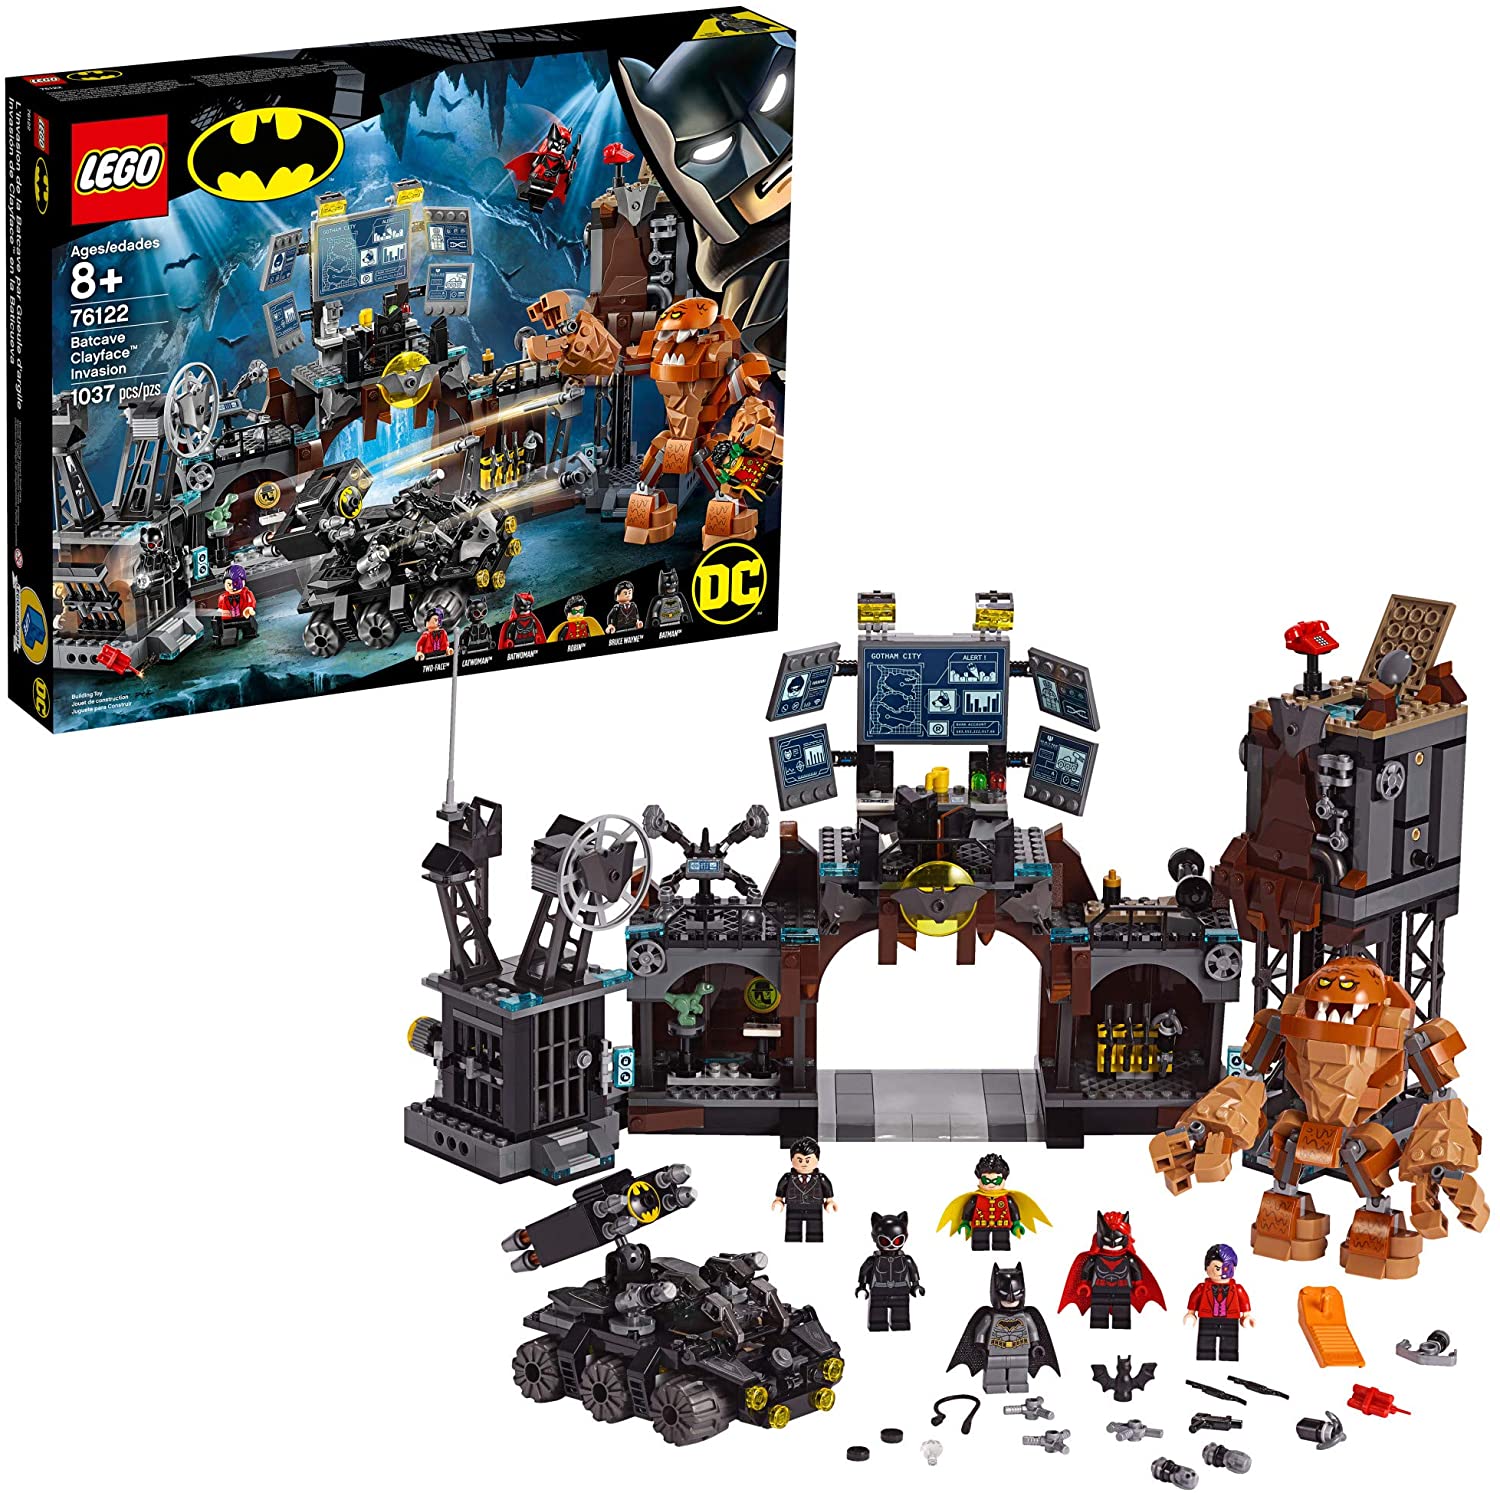 Genuine】LEGO Bộ xây dựng đồ chơi Người dơi DC Batman Cave Clayface Invasion  76122 với các nhân vật mini hành động Batman và Bruce Wayne, đồ chơi siêu  anh hùng DC phổ